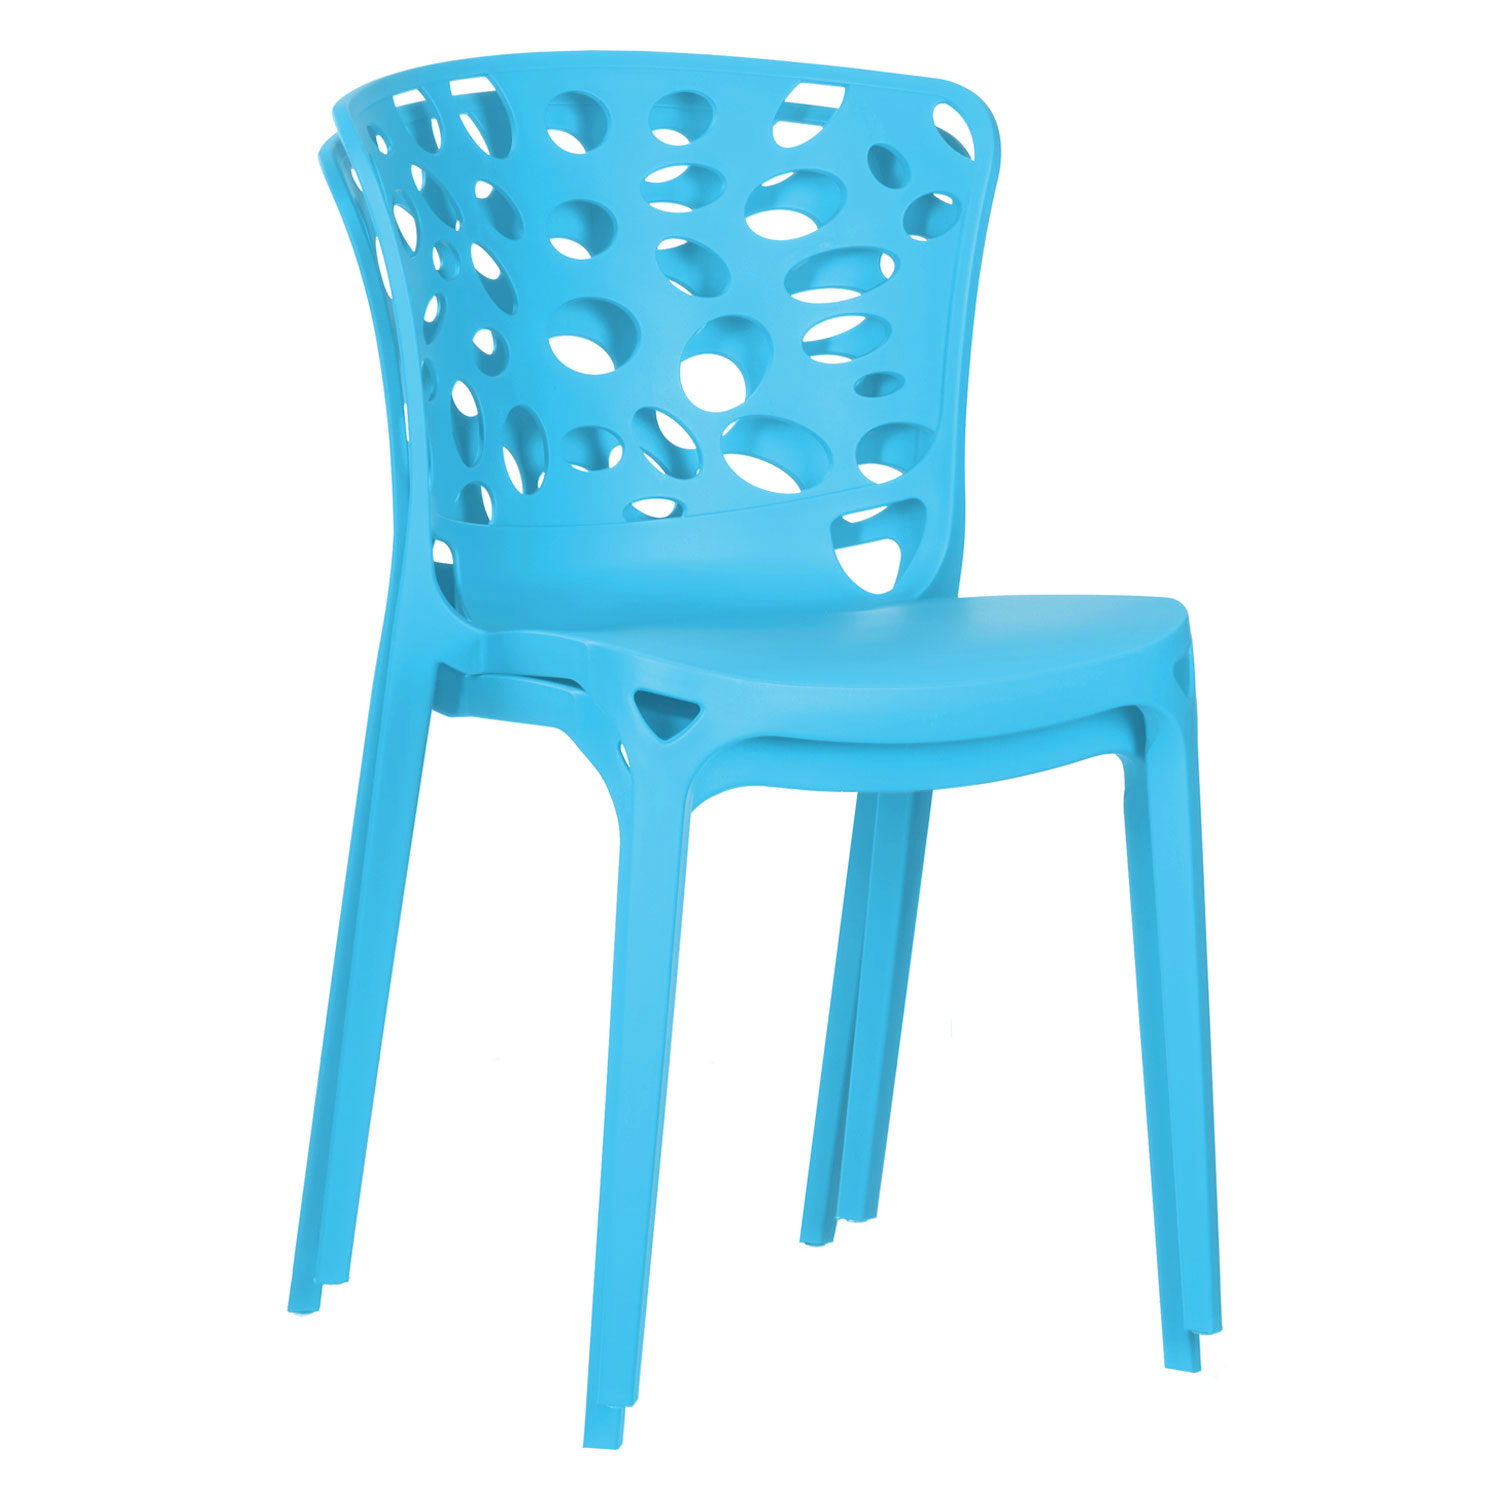 Gartenstuhl 2er Set Modern Blau Stühle Küchenstühle Kunststoff Stapelstühle Balkonstuhl Outdoor-Stuhl